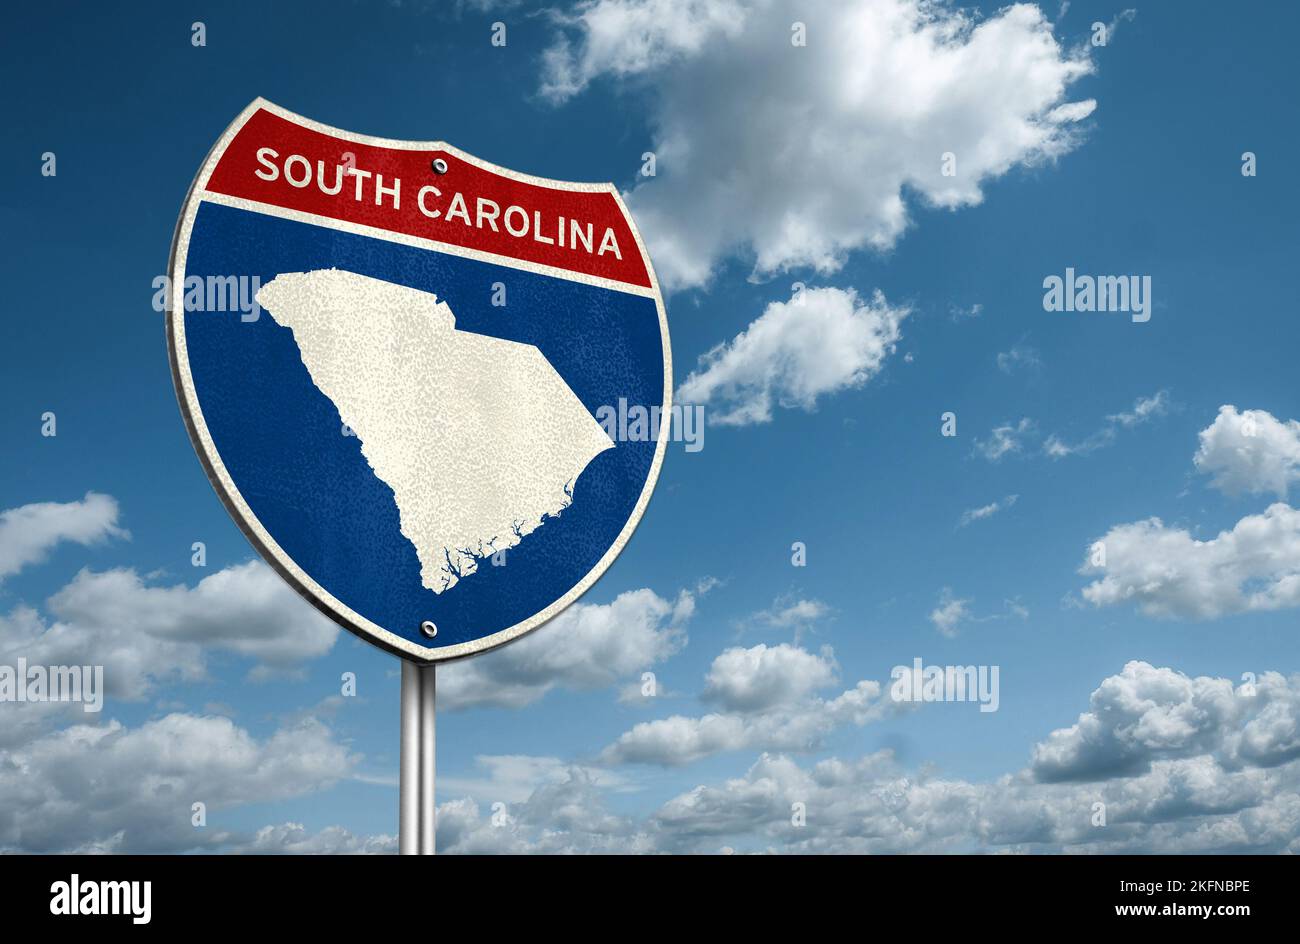 Carolina del Sud - Stato degli Stati Uniti nella regione costiera sudorientale degli Stati Uniti Foto Stock